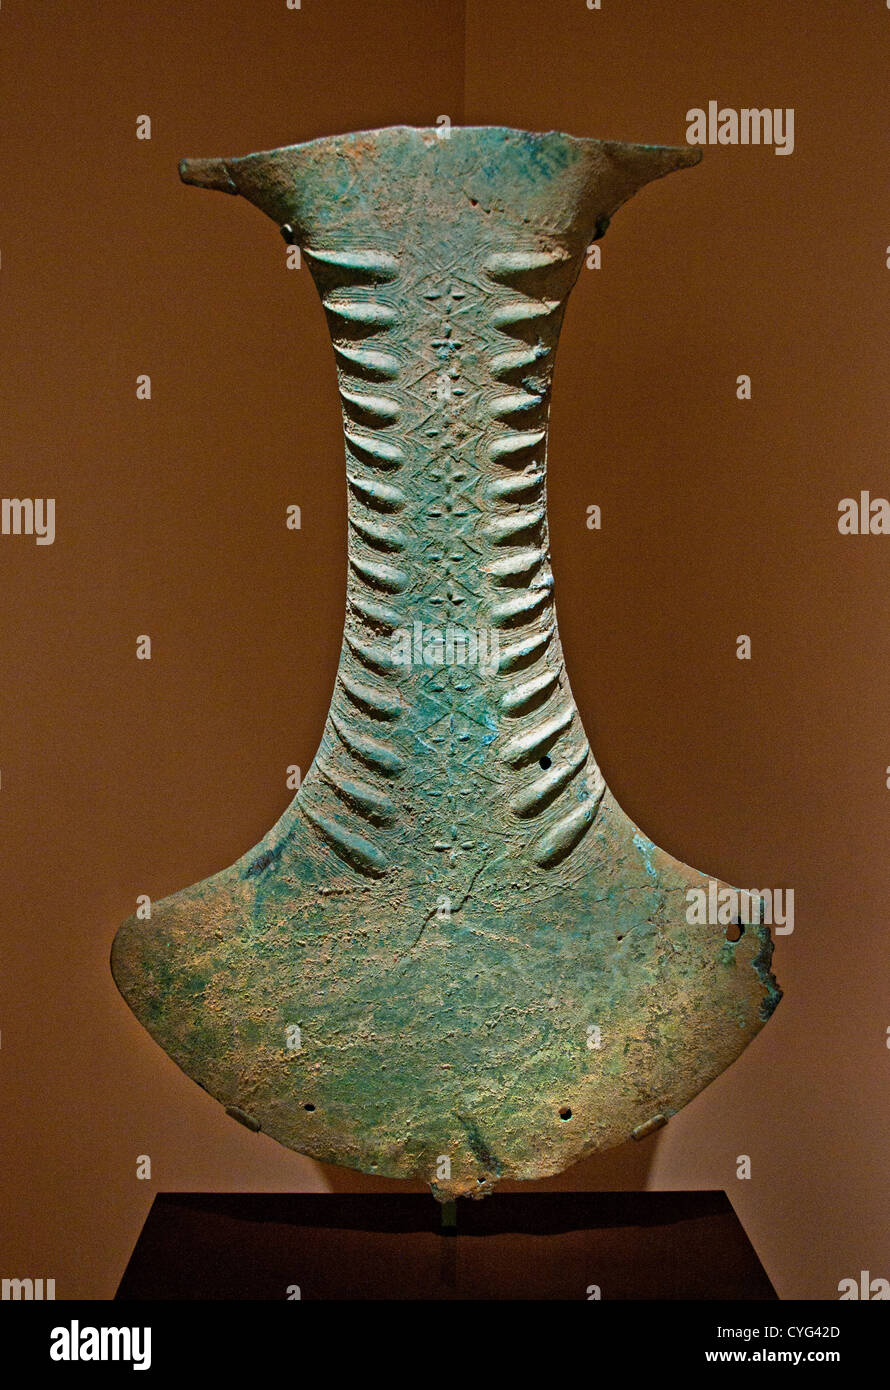 Objetos ceremoniales en la forma de un Hacha de Bronce y la Edad del Hierro (100 A.C. a 300 D.C. Indonesia Sulawesi Bronce 105 cm Foto de stock